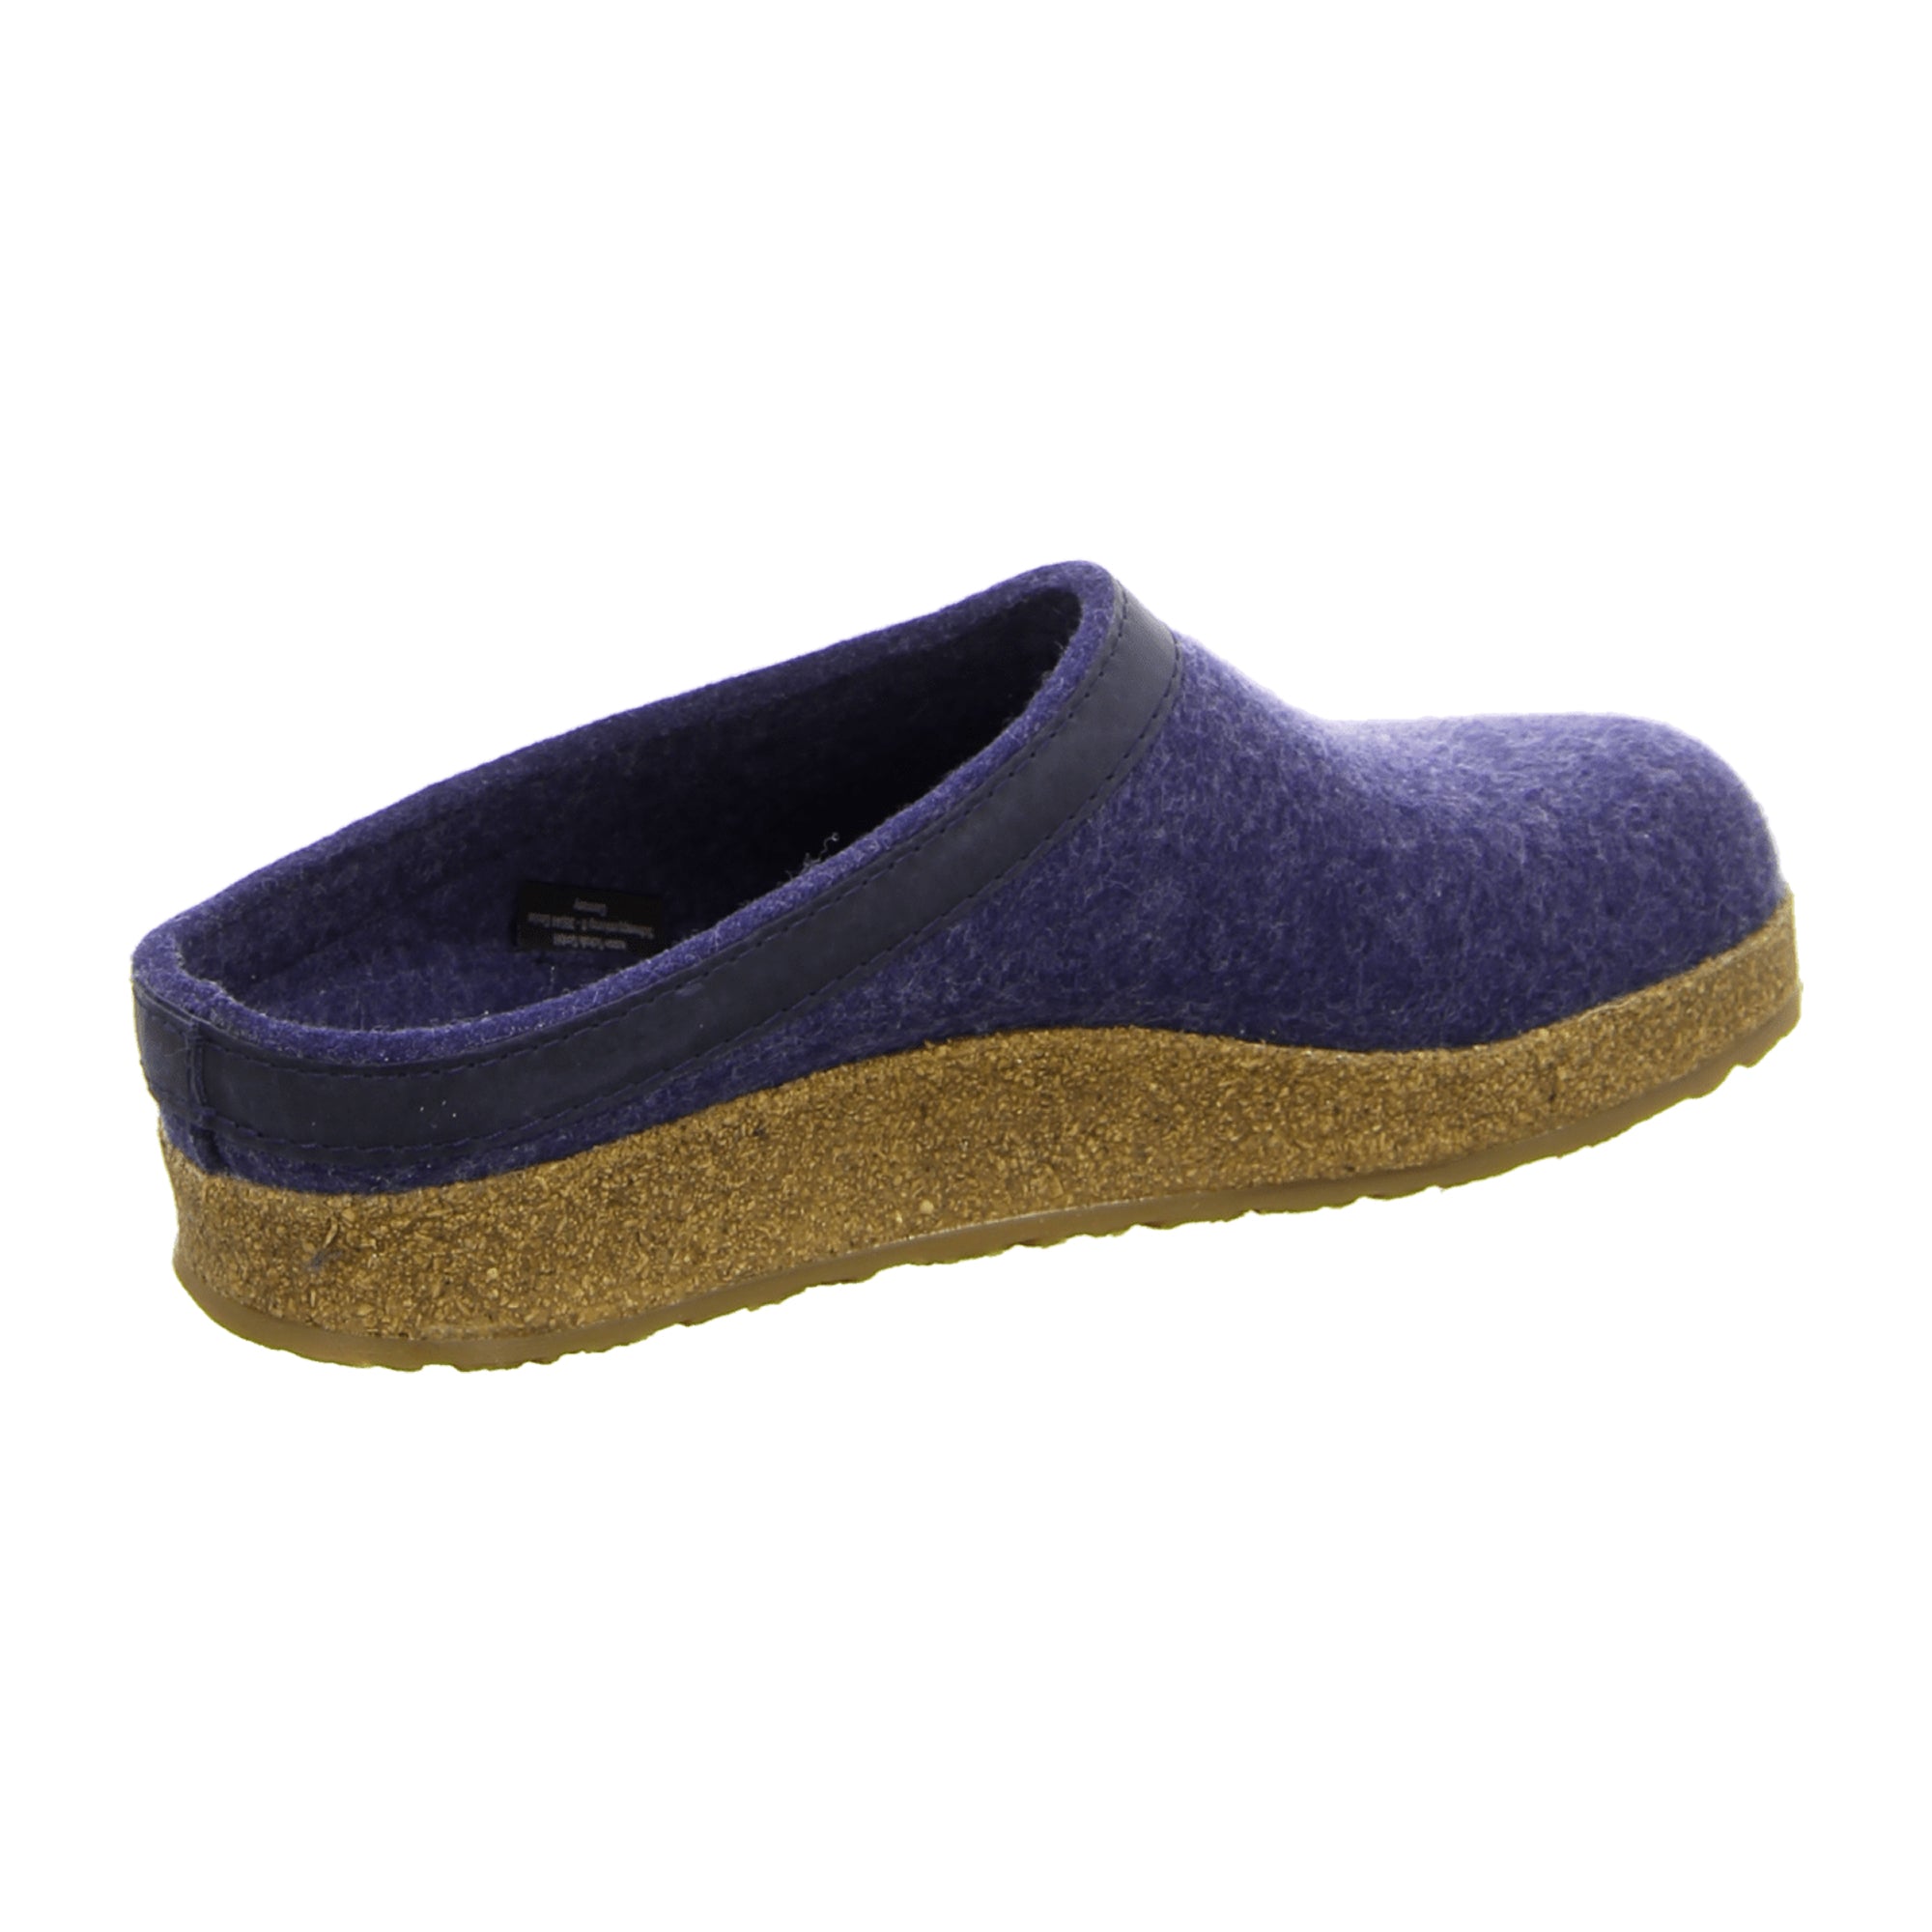 Haflinger Torben Men's Comfort Slippers, Stylish Blue